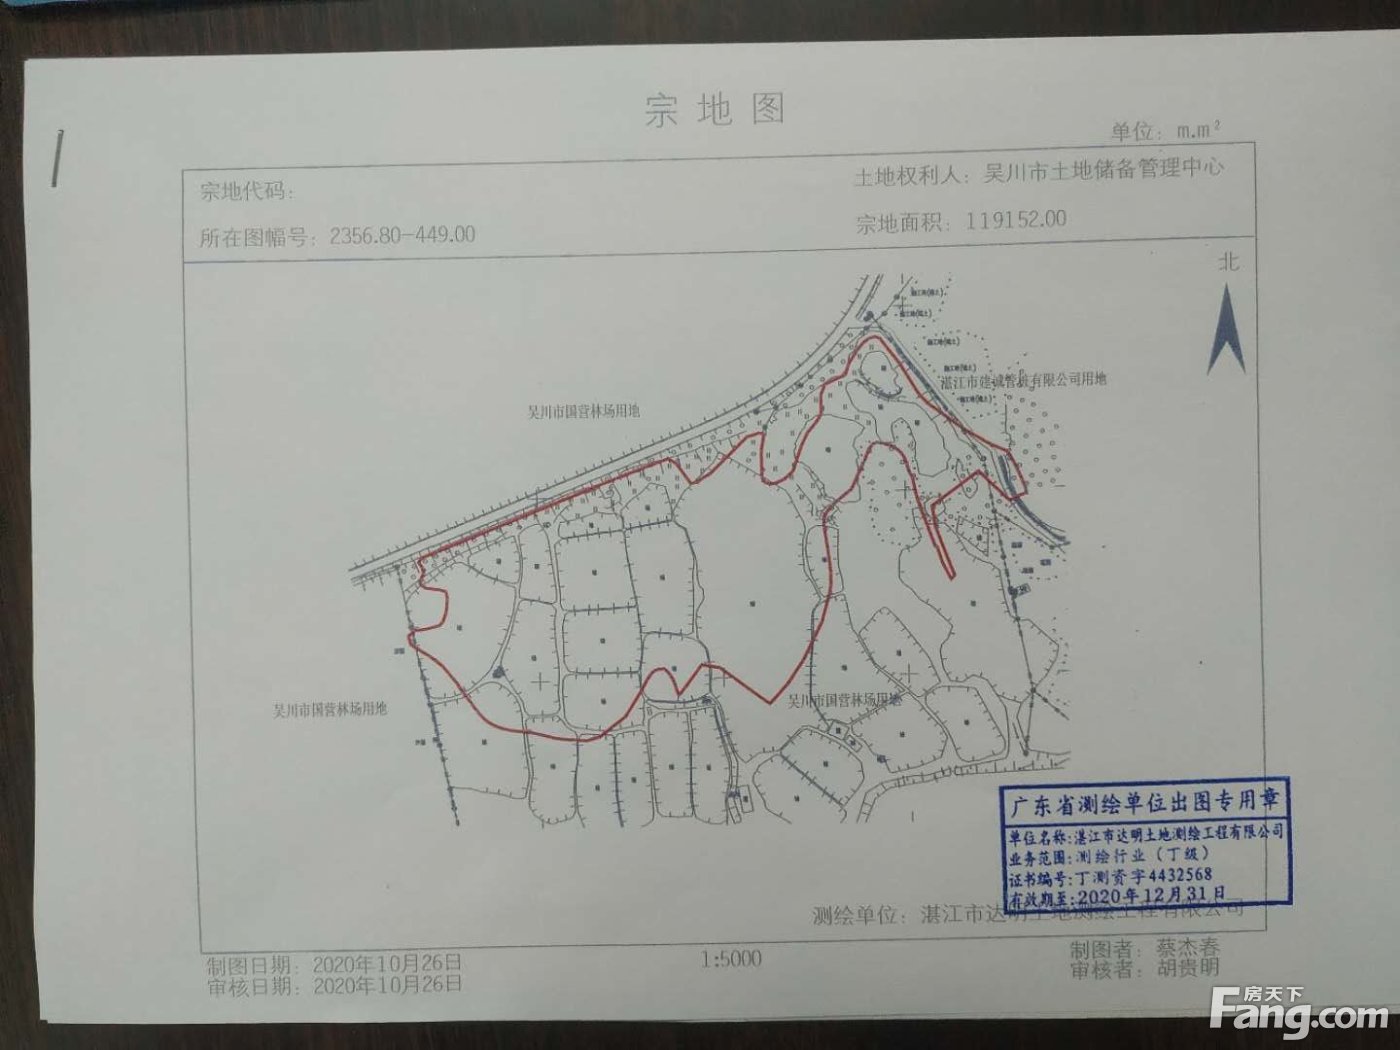 吴川市2宗土地挂牌出让 总出让面积约17万平米 含1宗宅地